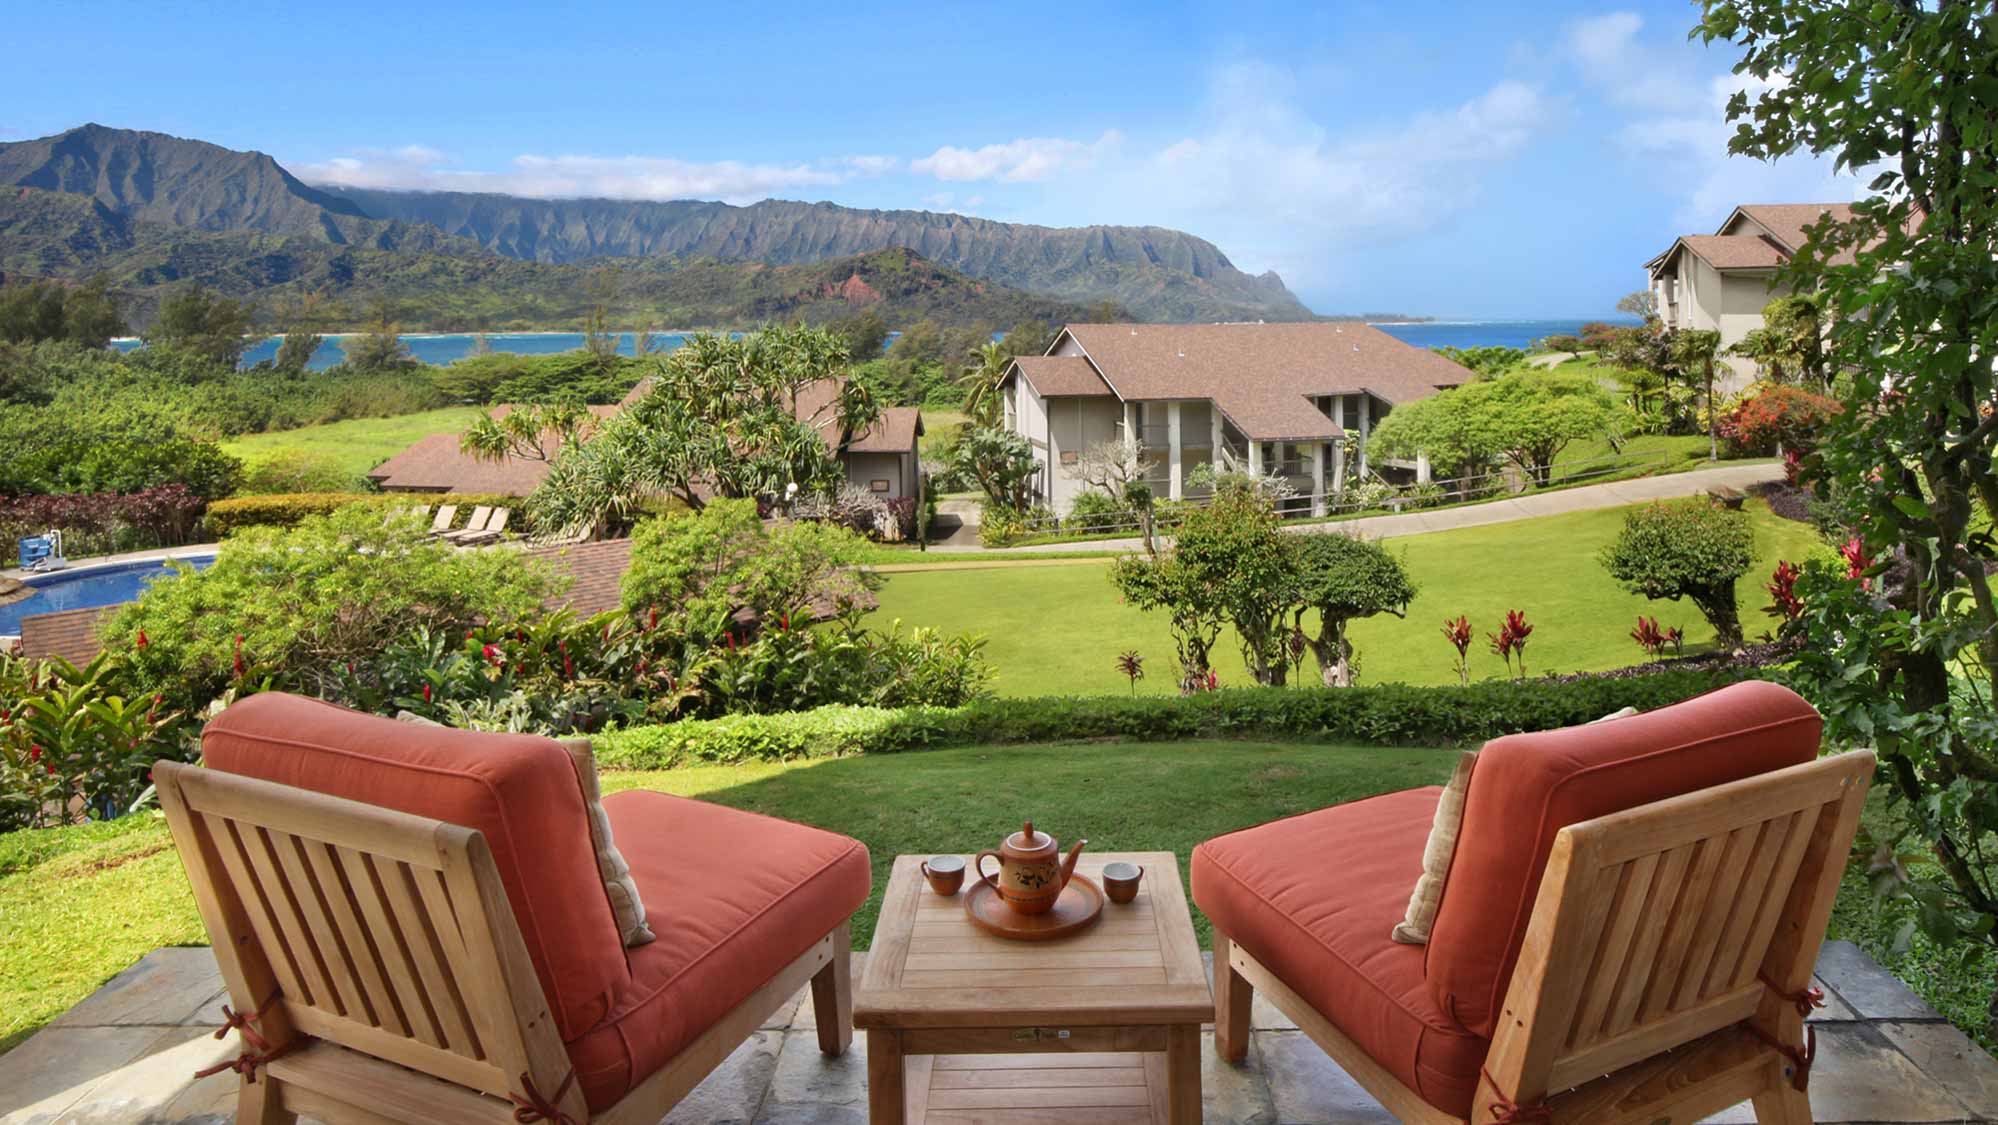 Hanalei Bay Resort #6102 - Ocean & Mountain View Lanai View - Parrish Kauai